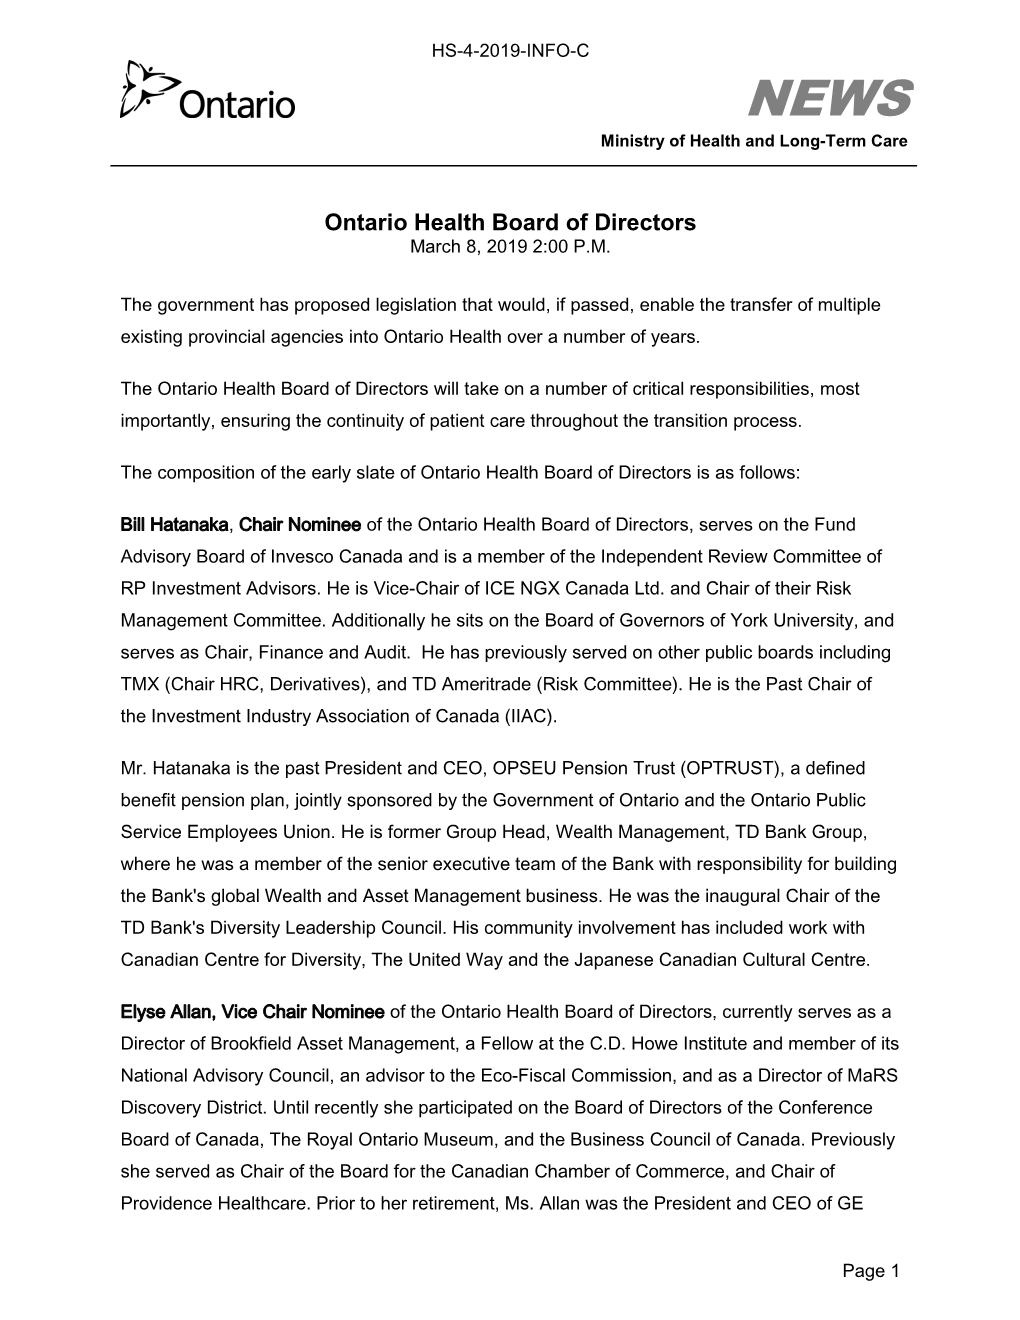 Ontario Health Board of Directors March 8, 2019 2:00 P.M